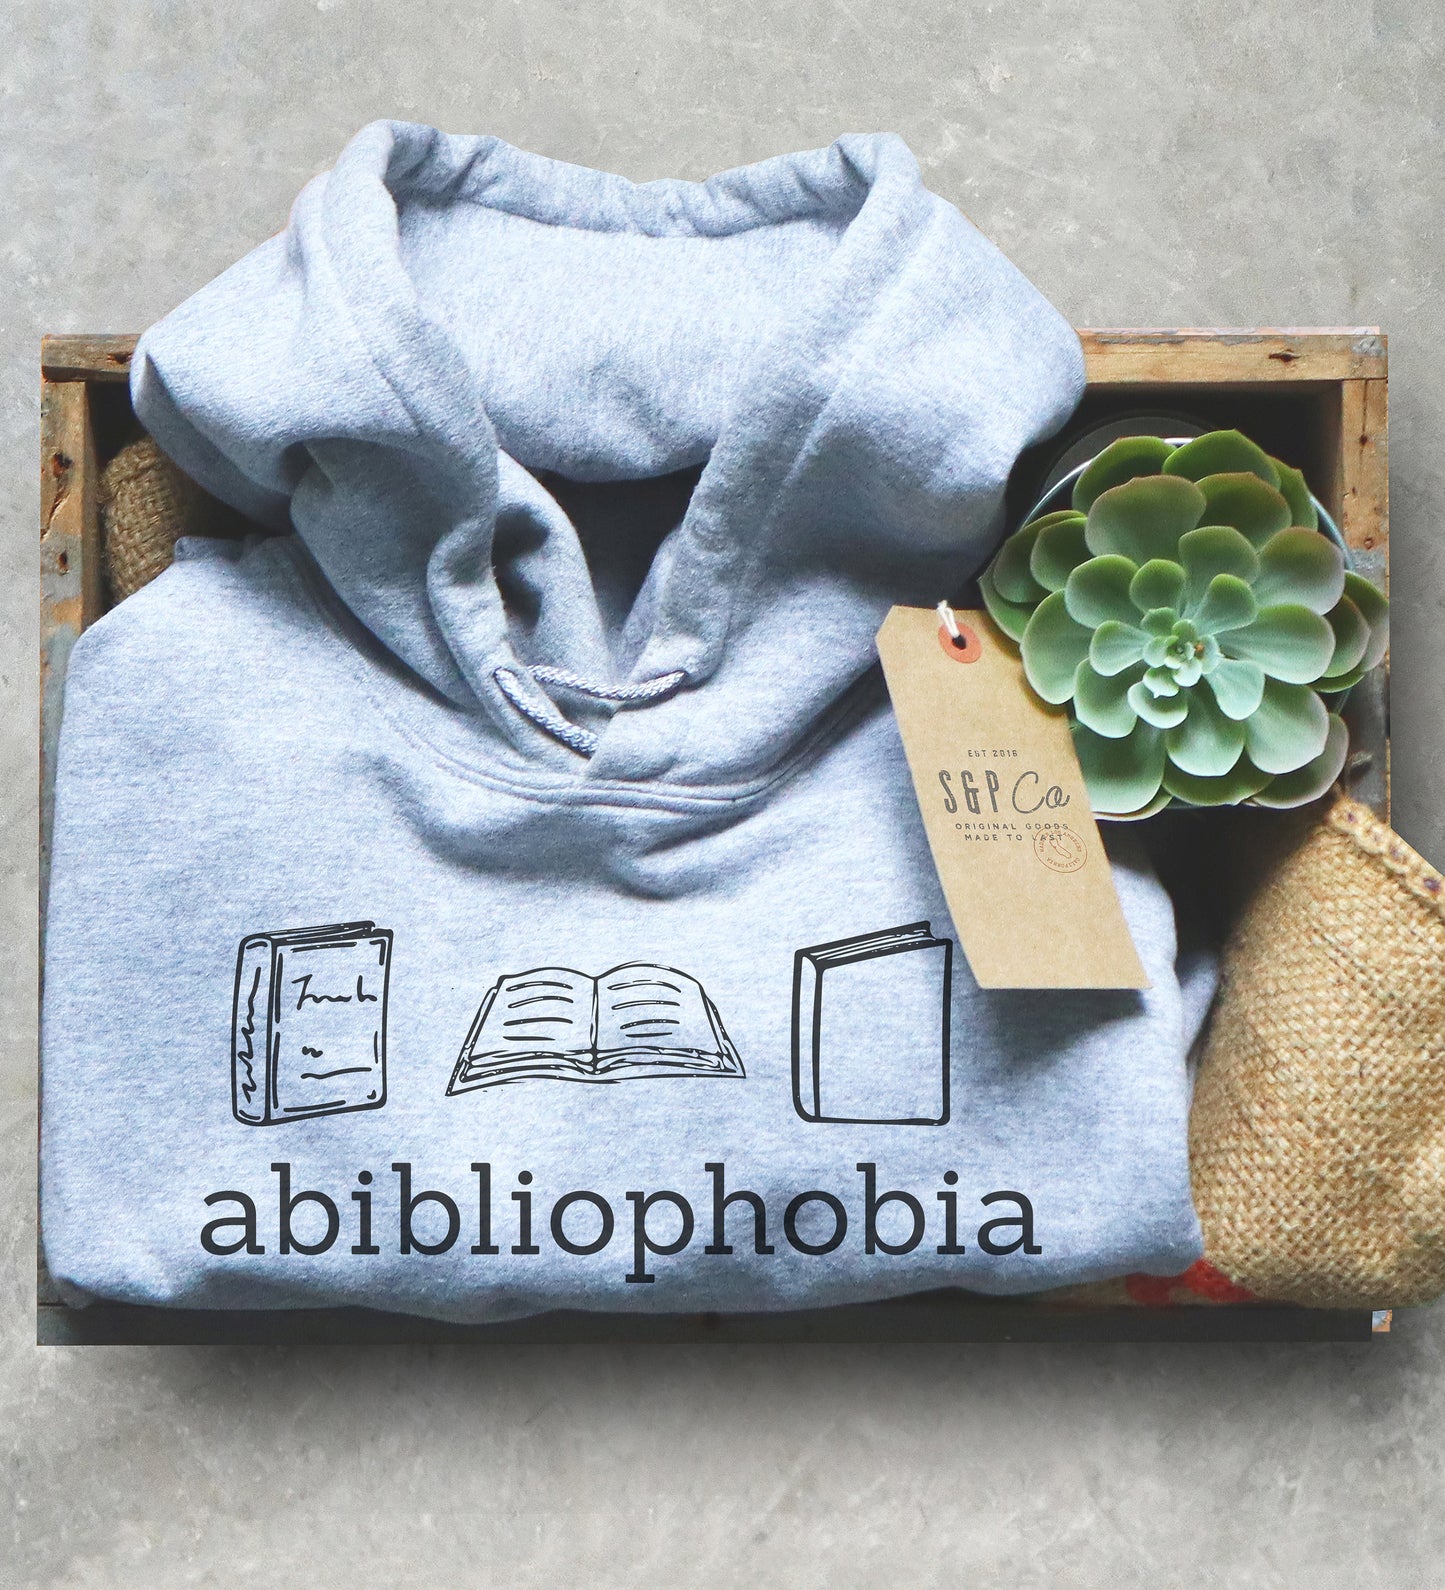 Abibliophobia Hoodie